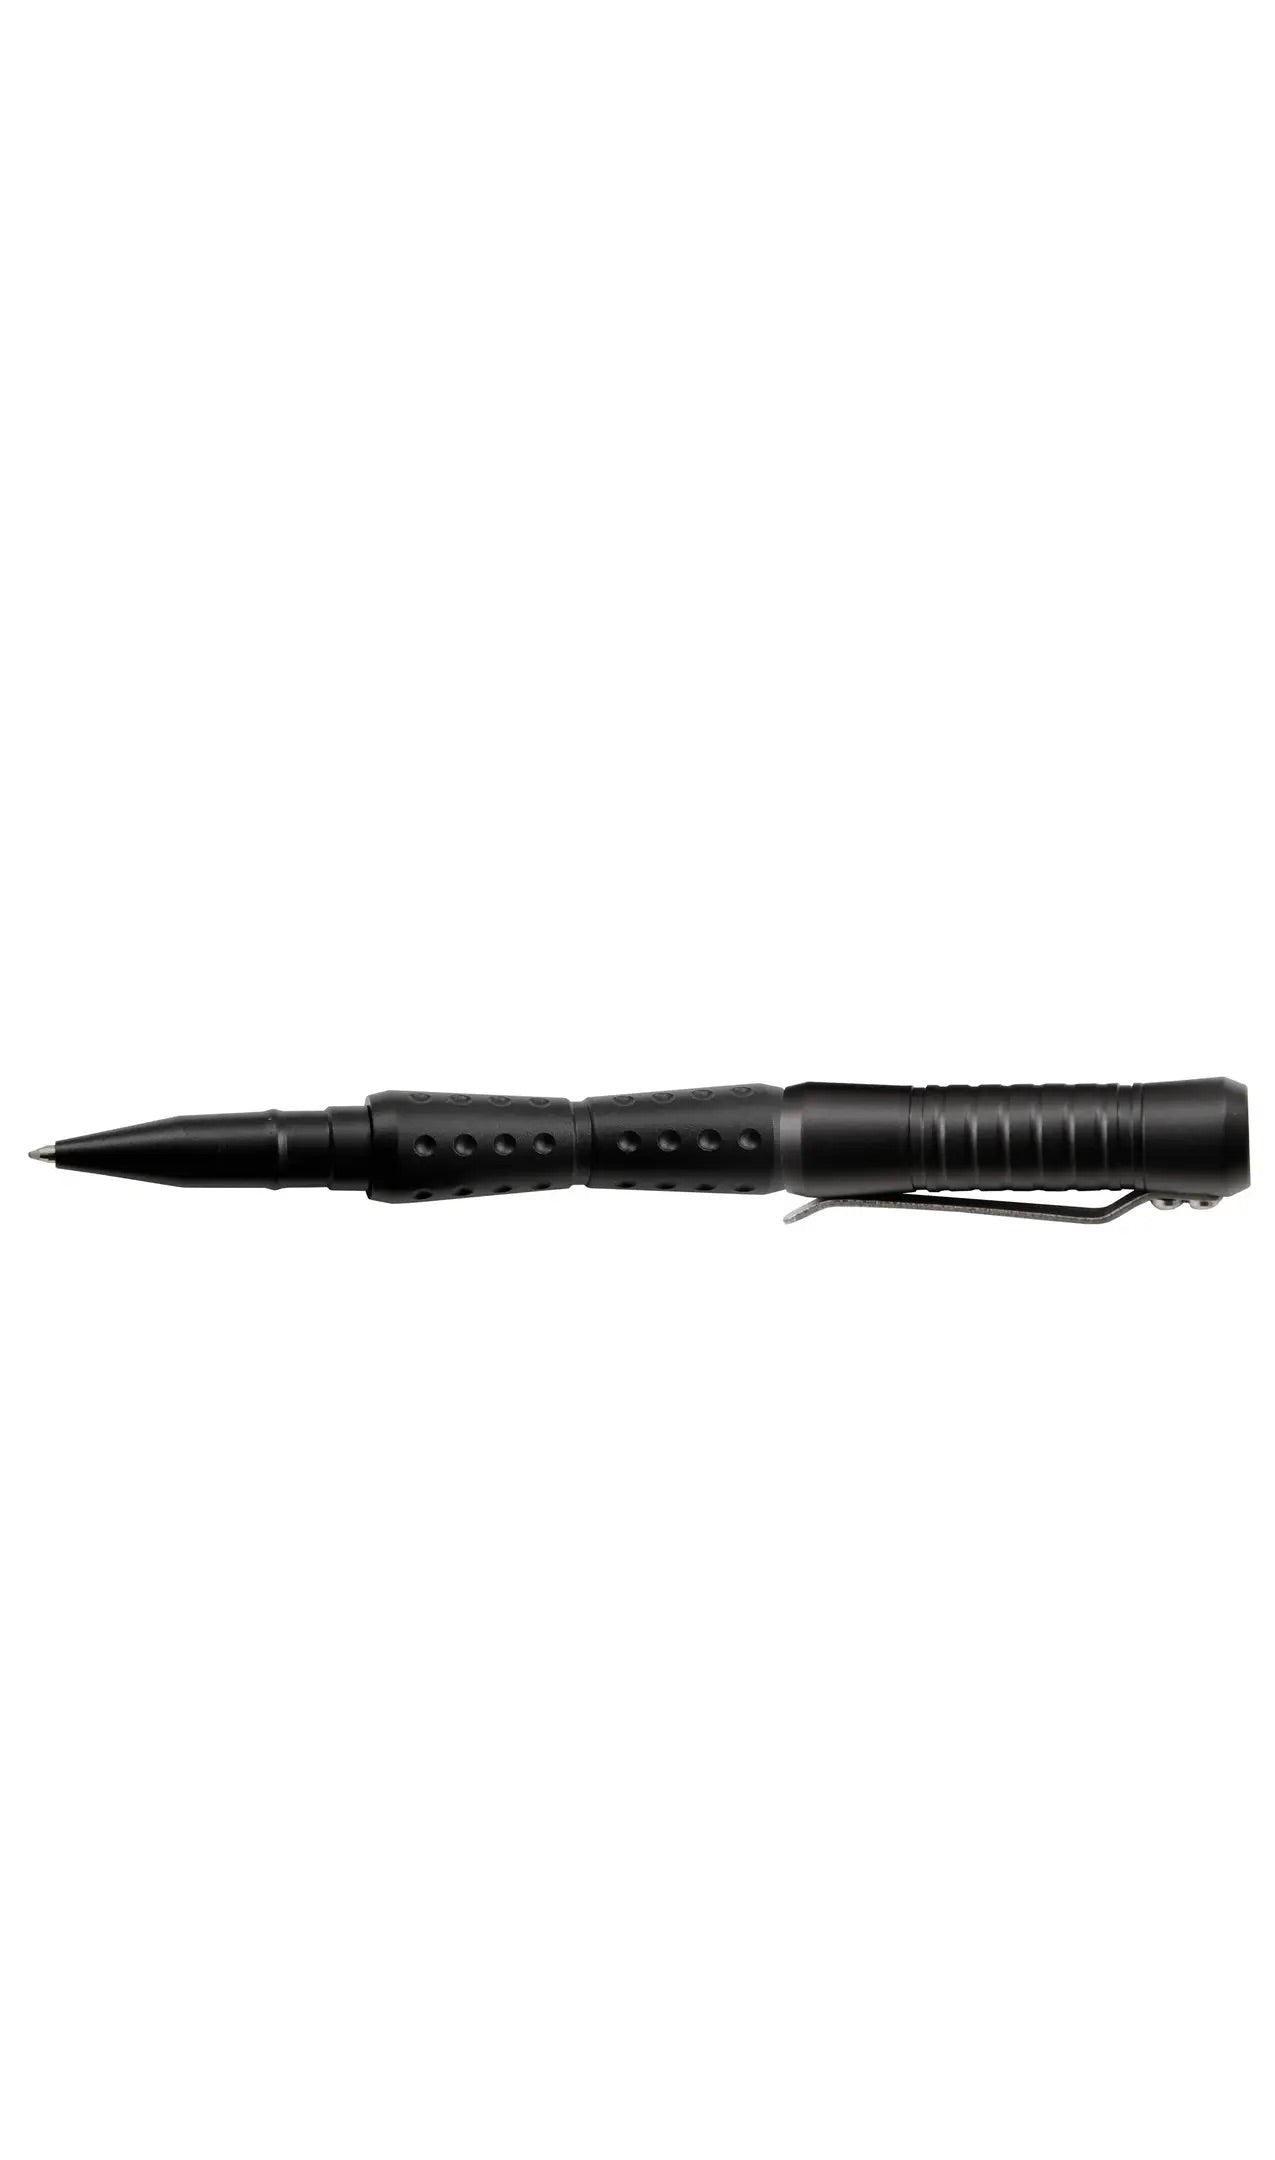 UZI Tactical Pen 19 | Black